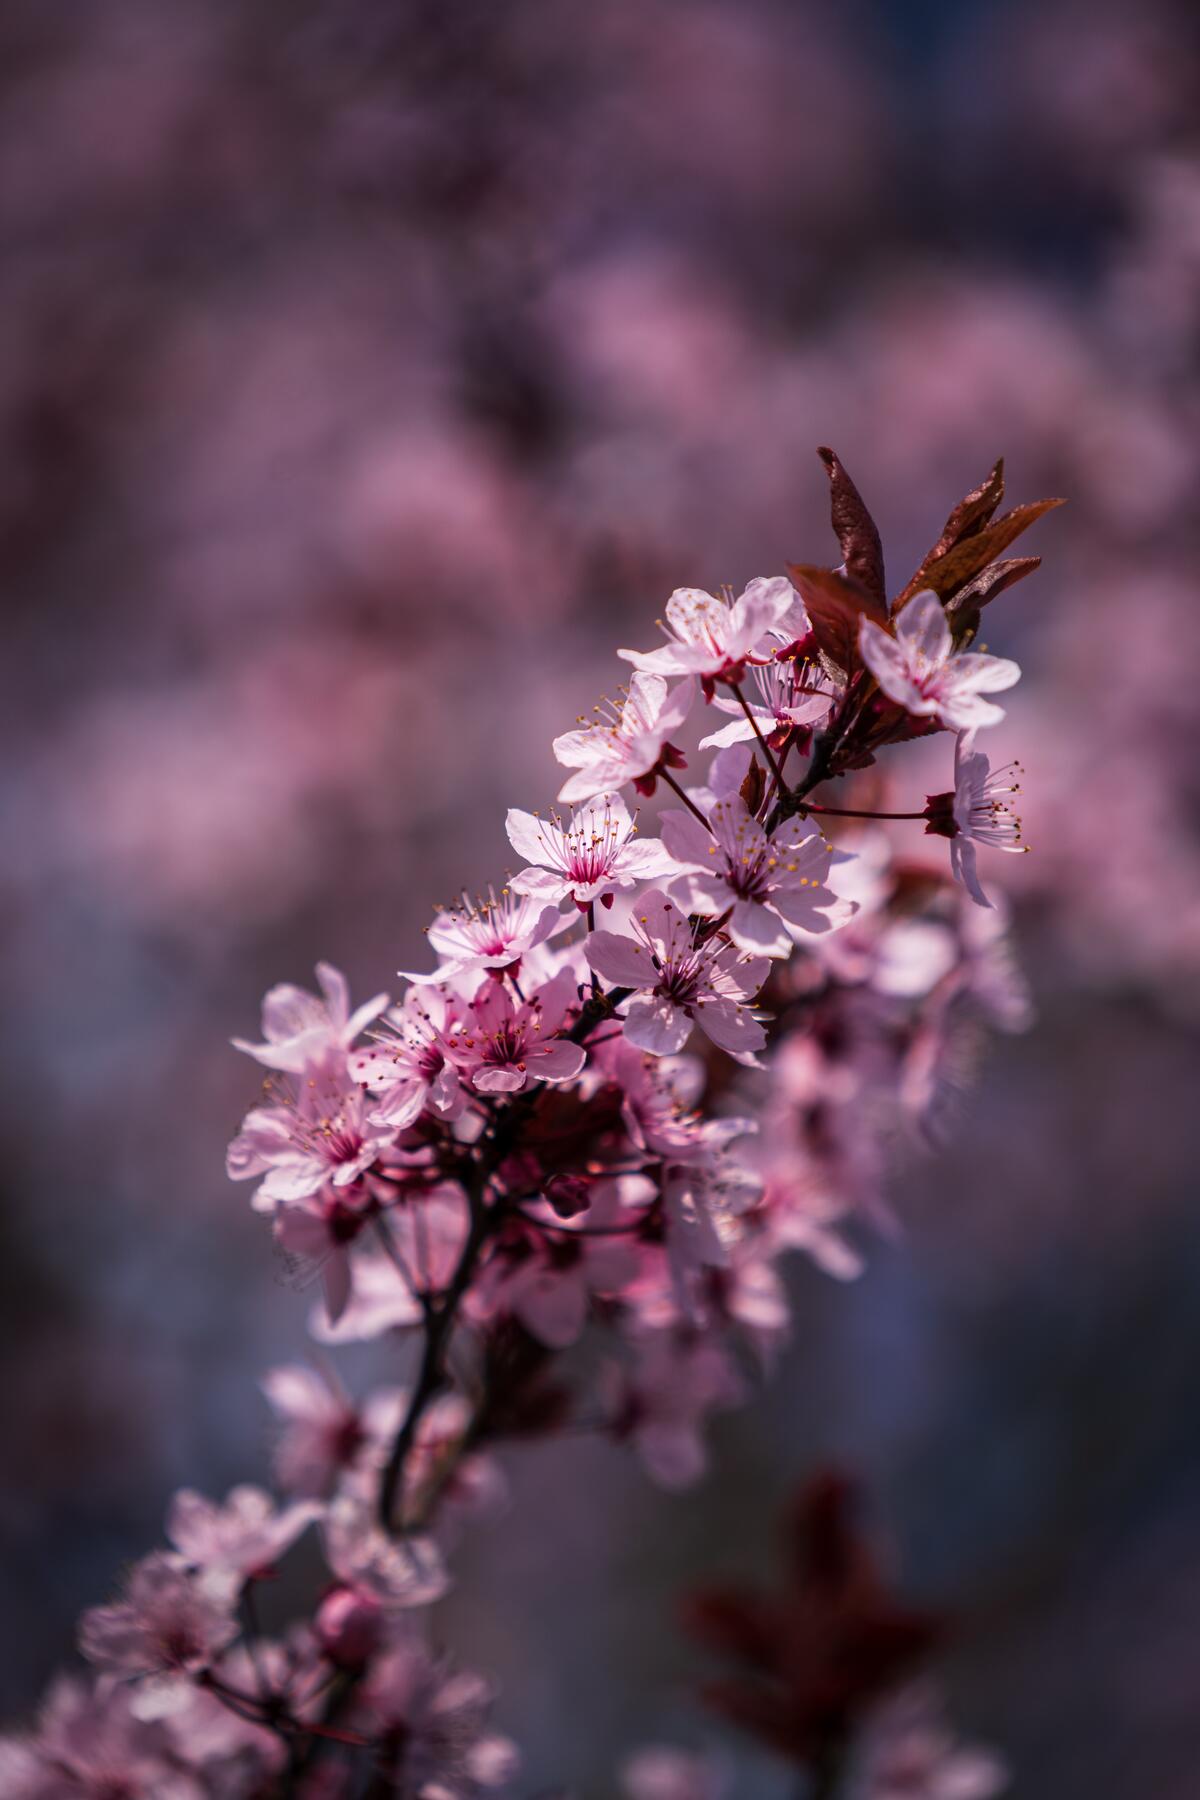 Pink sakura flowers